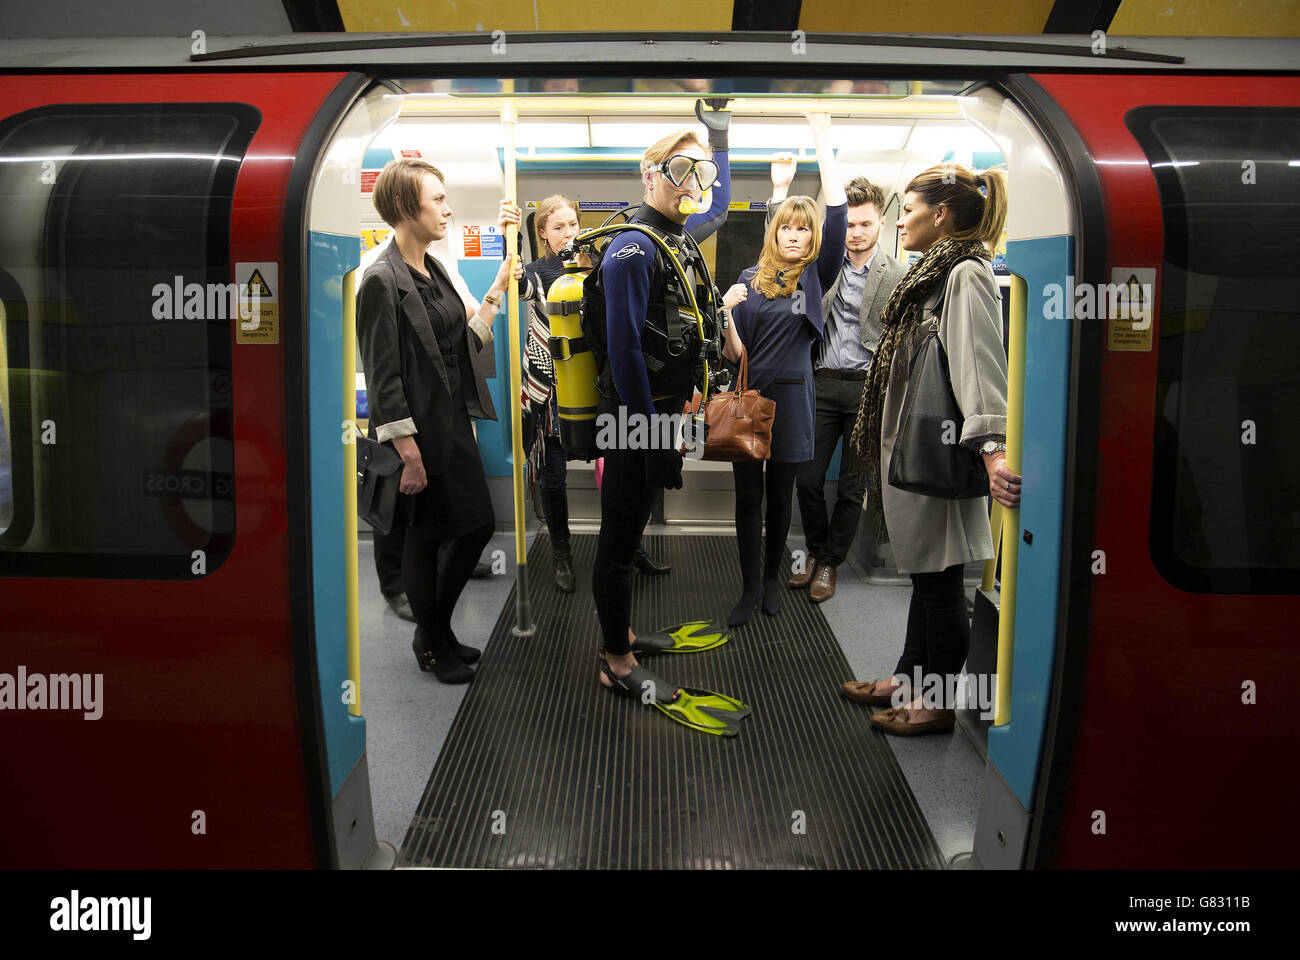 NUR zur redaktionellen Nutzung ein Schauspielers gekleidet wie eine Taucher seinen Weg durch die Londoner U-Bahn für Teletext Holidays-Sommer-Kampagne zum Start des Sommers macht Ferienzeit. Stockfoto